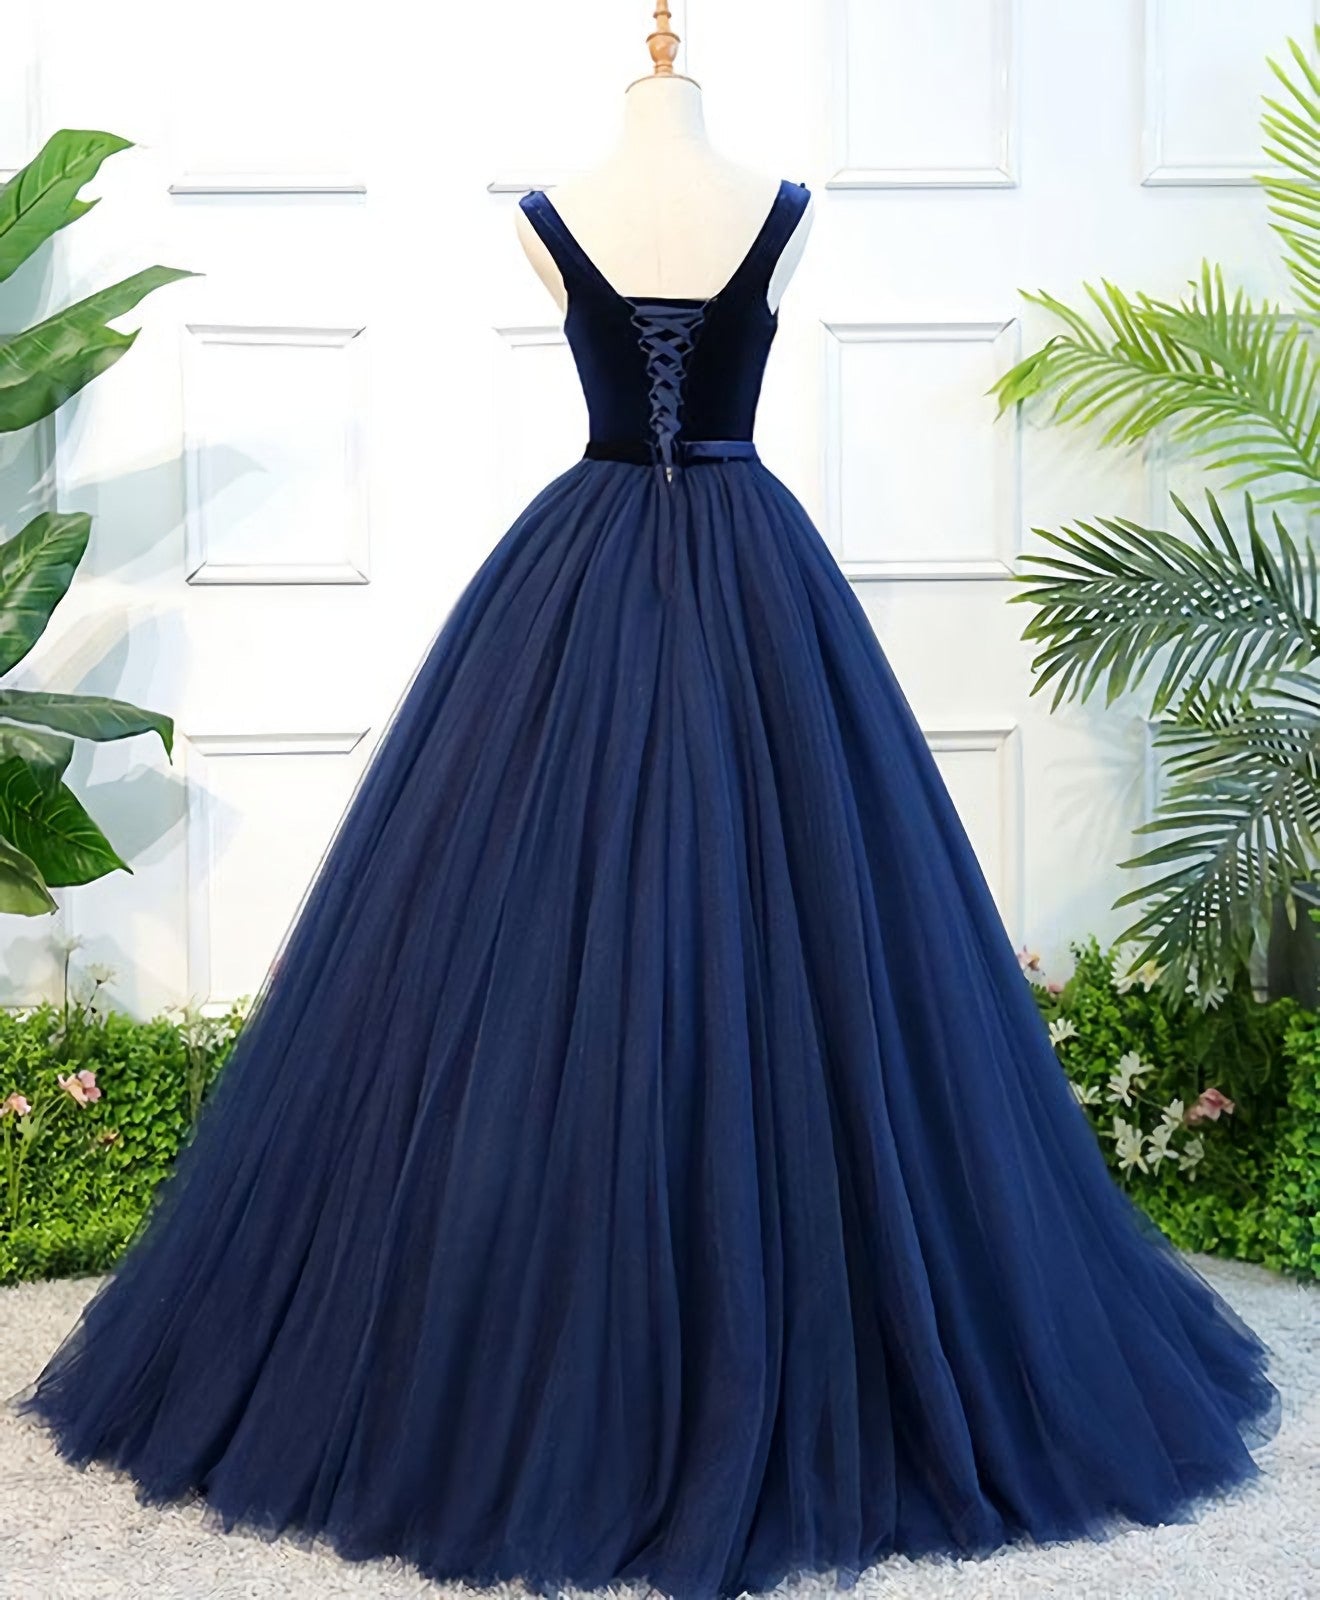 Party Dress Wedding Guest Dress, Dark Blue Tulle Long Prom Dress, Dark Blue Tulle Evening Dress